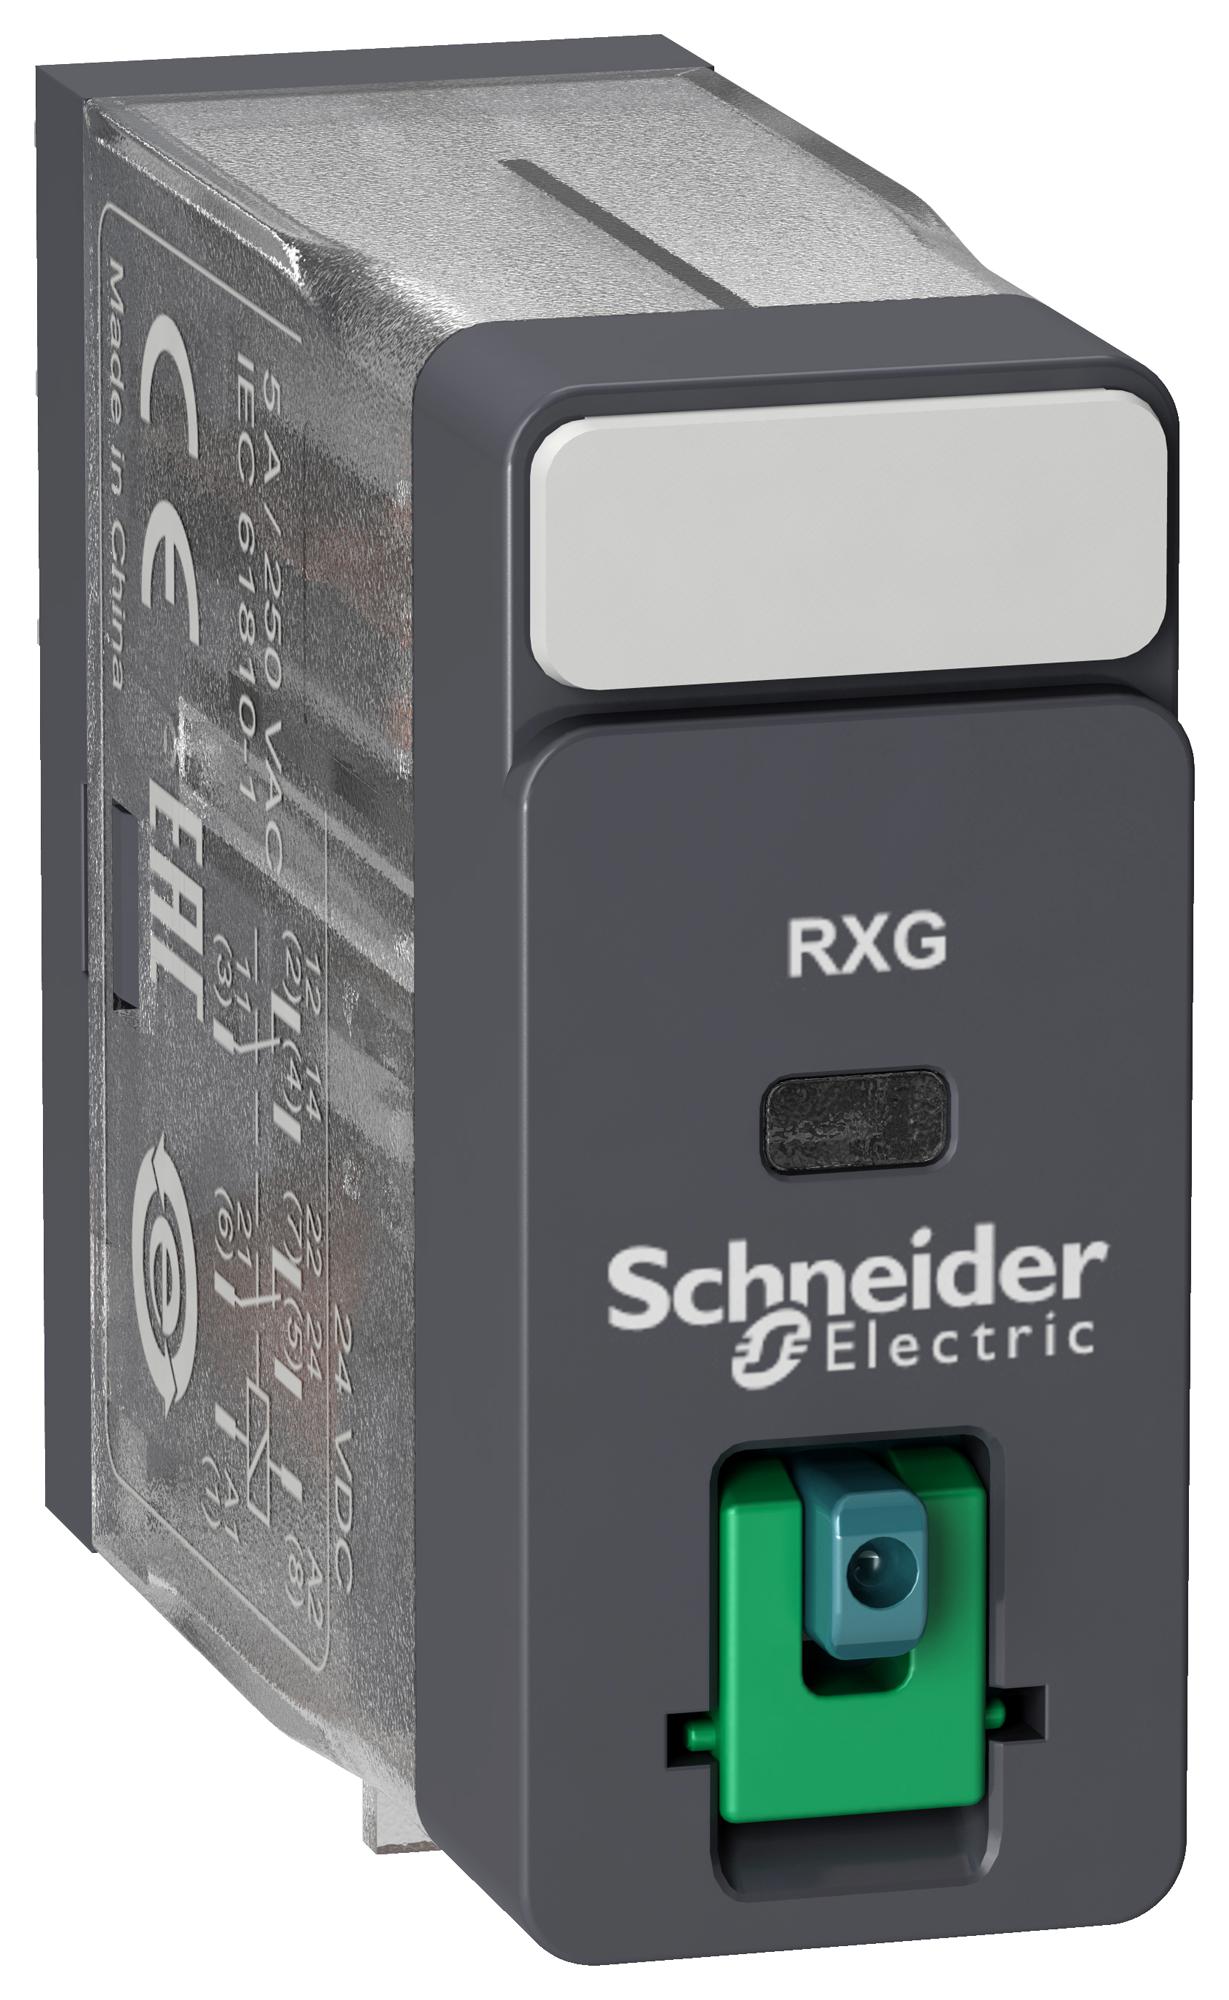 RXG21JD POWER RELAY, DPDT, 5A, 250VAC SCHNEIDER ELECTRIC